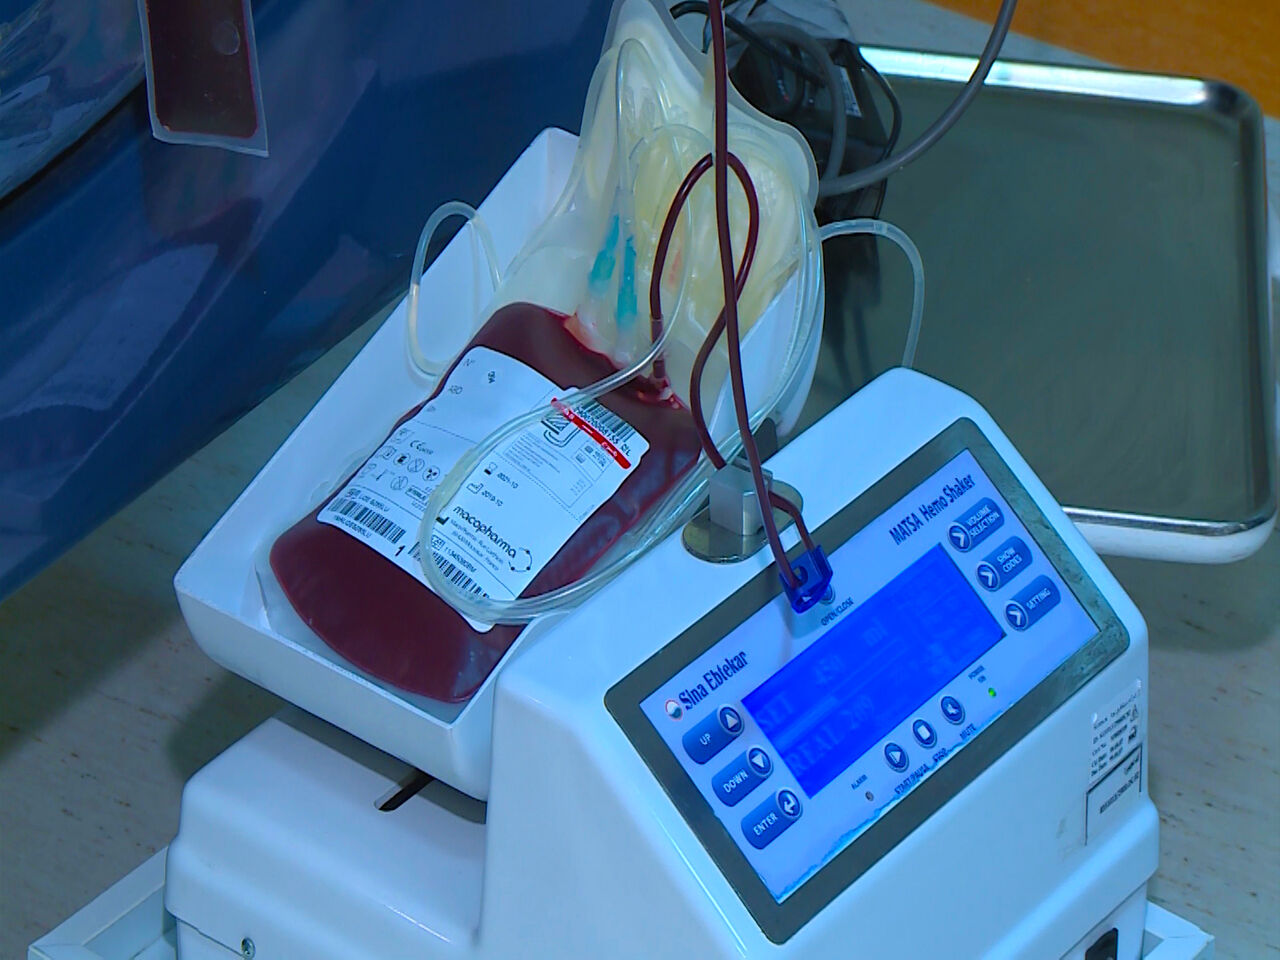 مدیرکل انتقال خون بوشهر: ذخایر خونی این استان رو به کاهش است